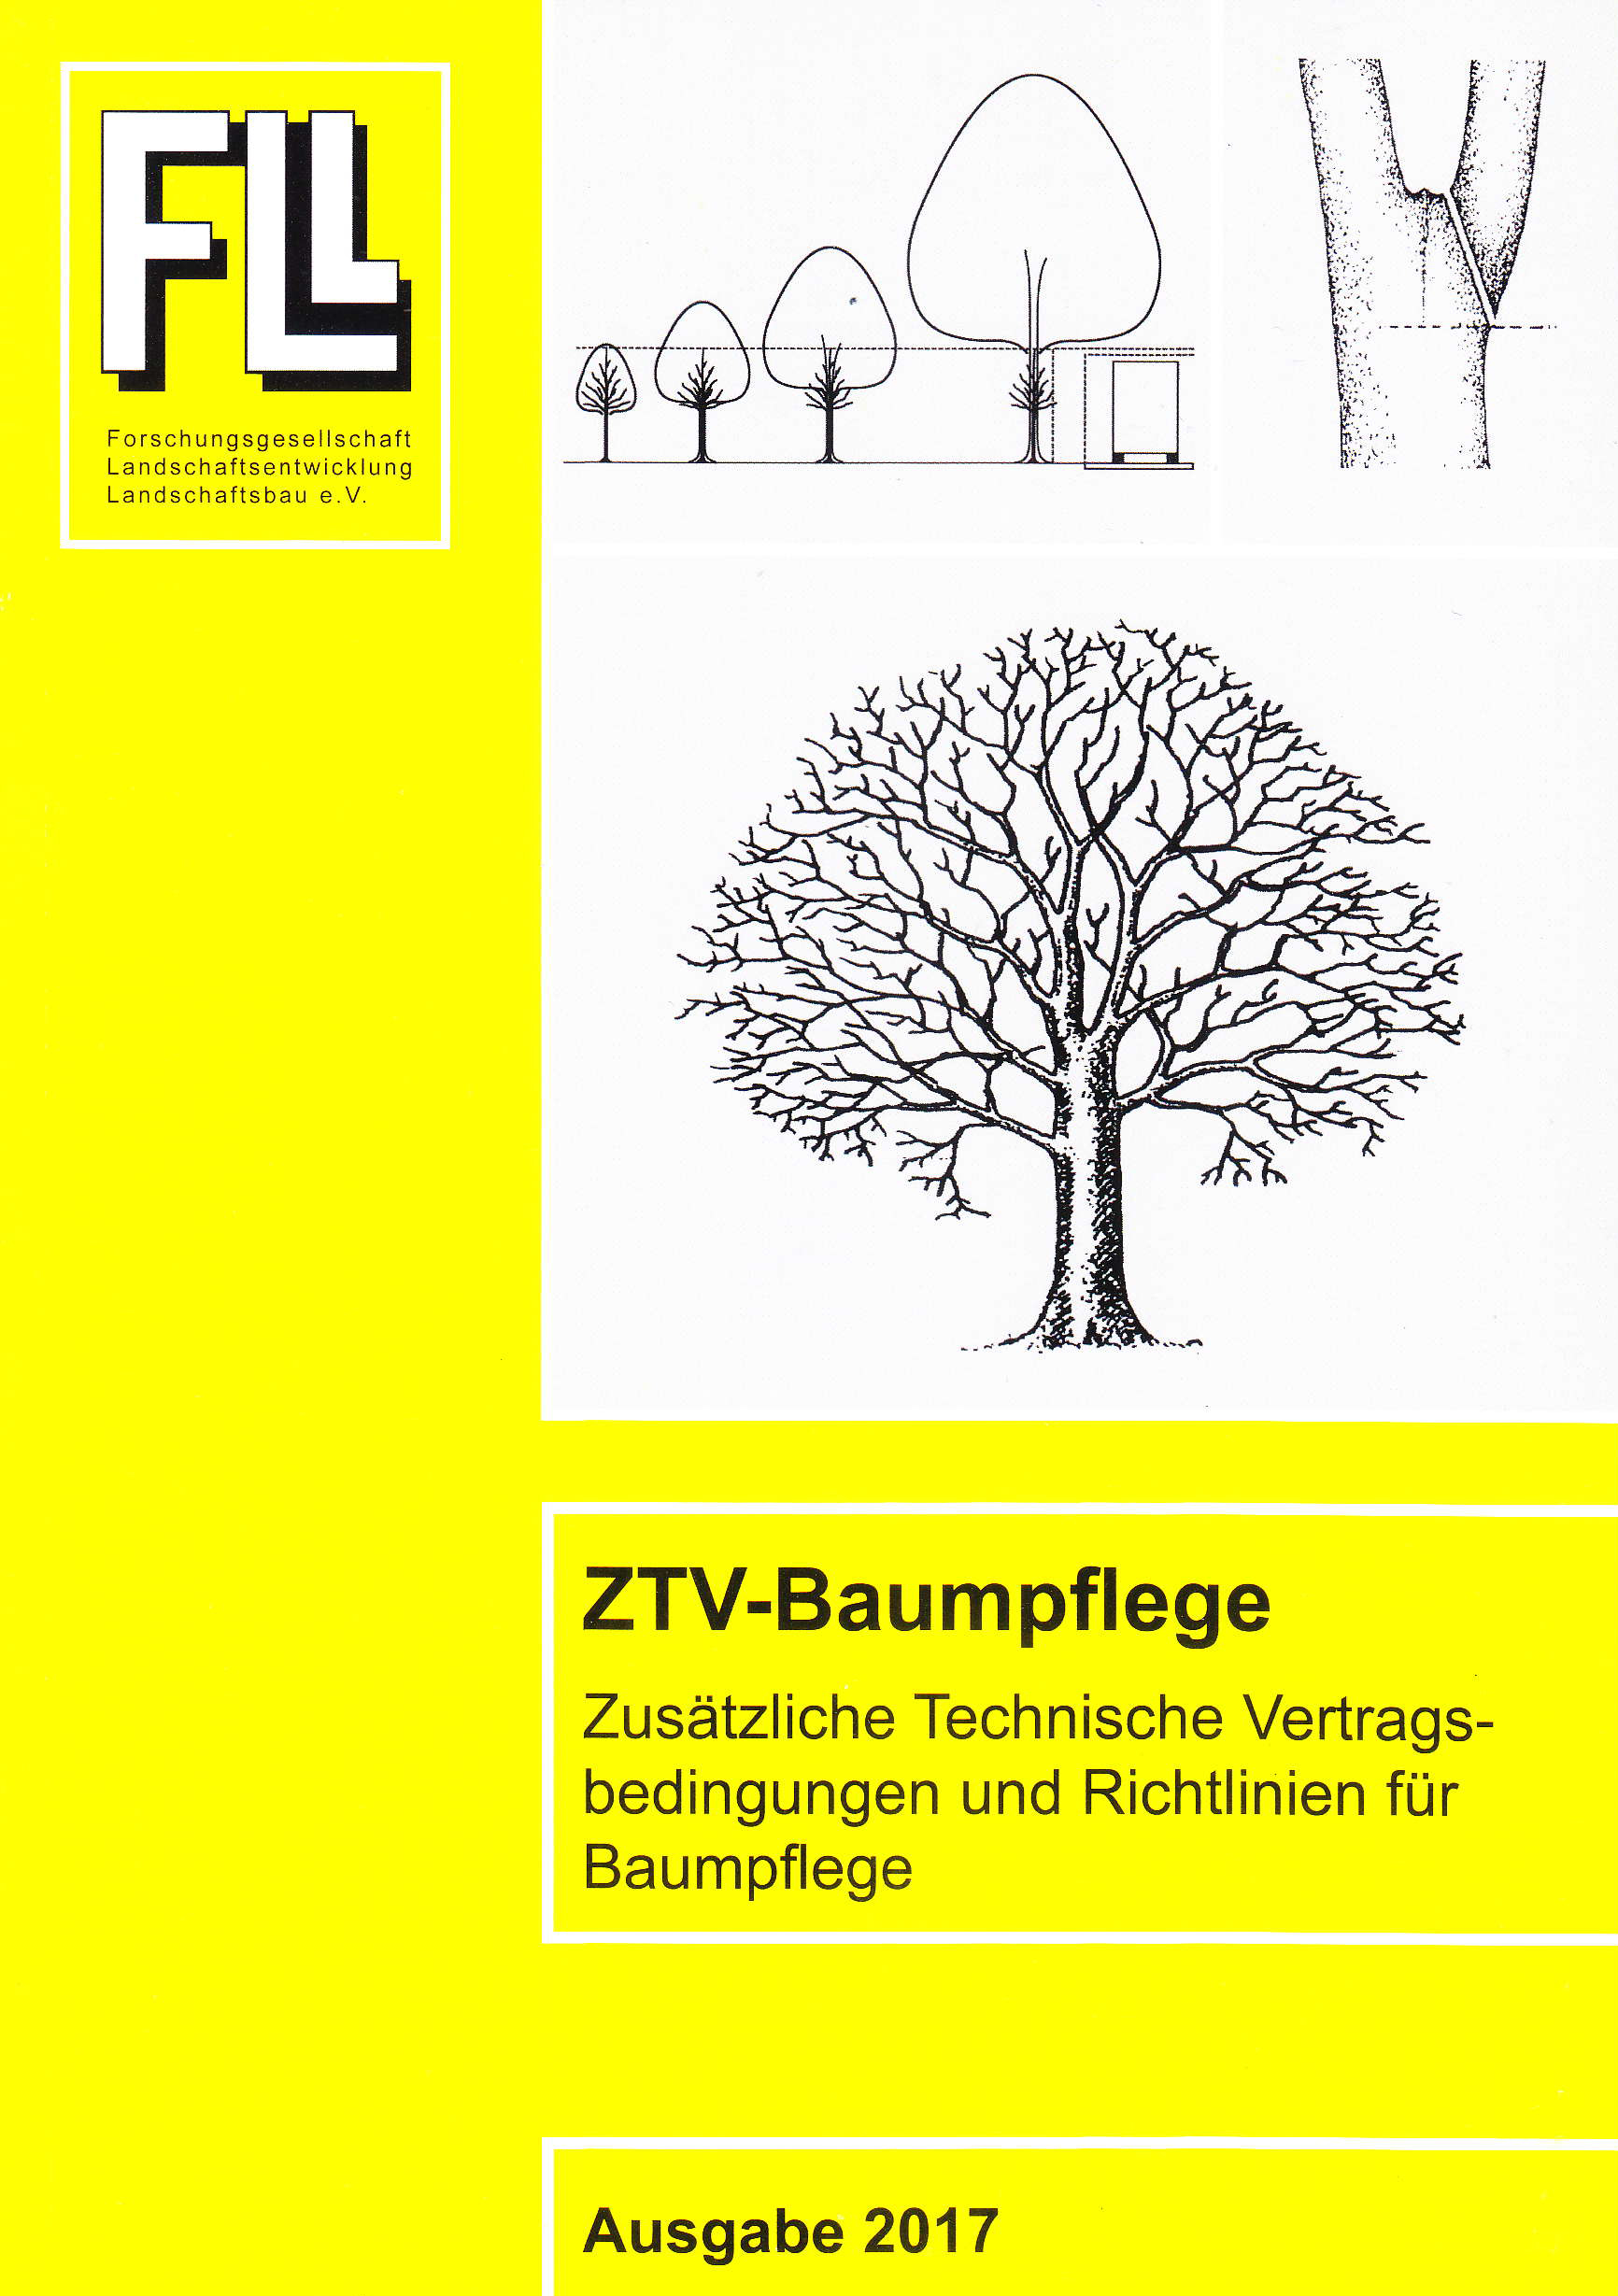 ZTV-Baumpflege Ausgabe 2017